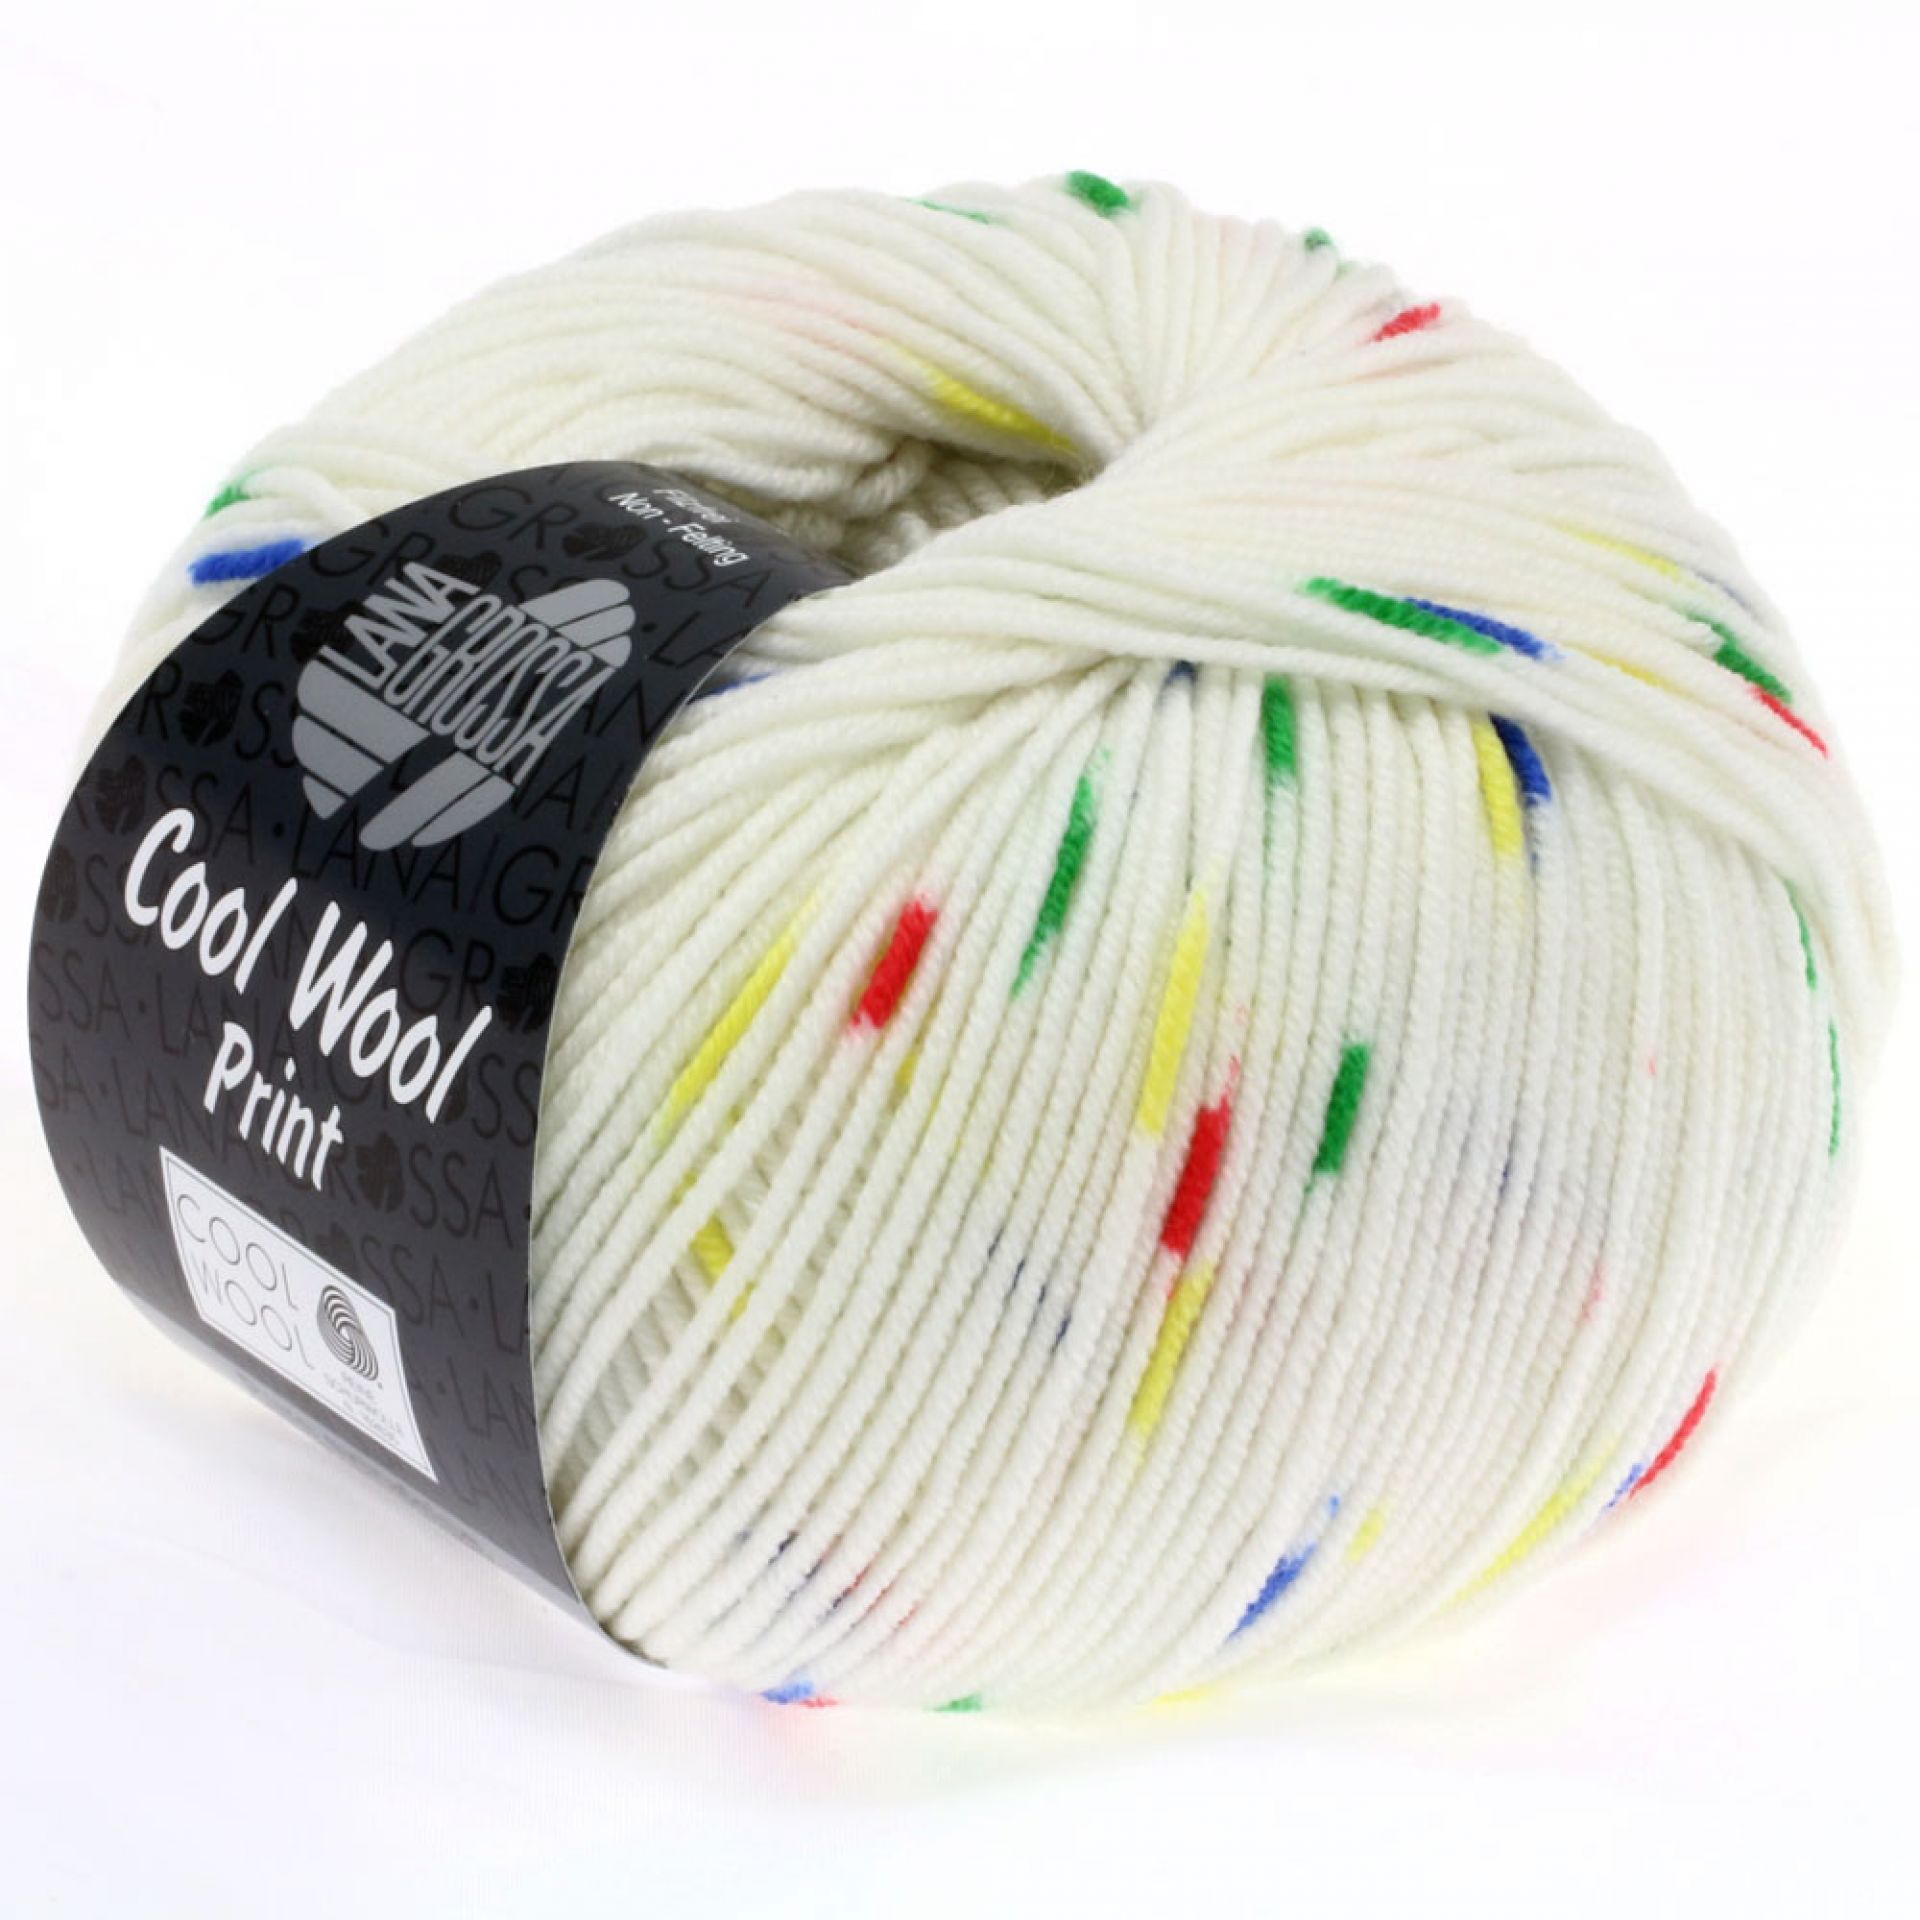 Garn Lana Grossa Cool Wool Print 801 Hvid